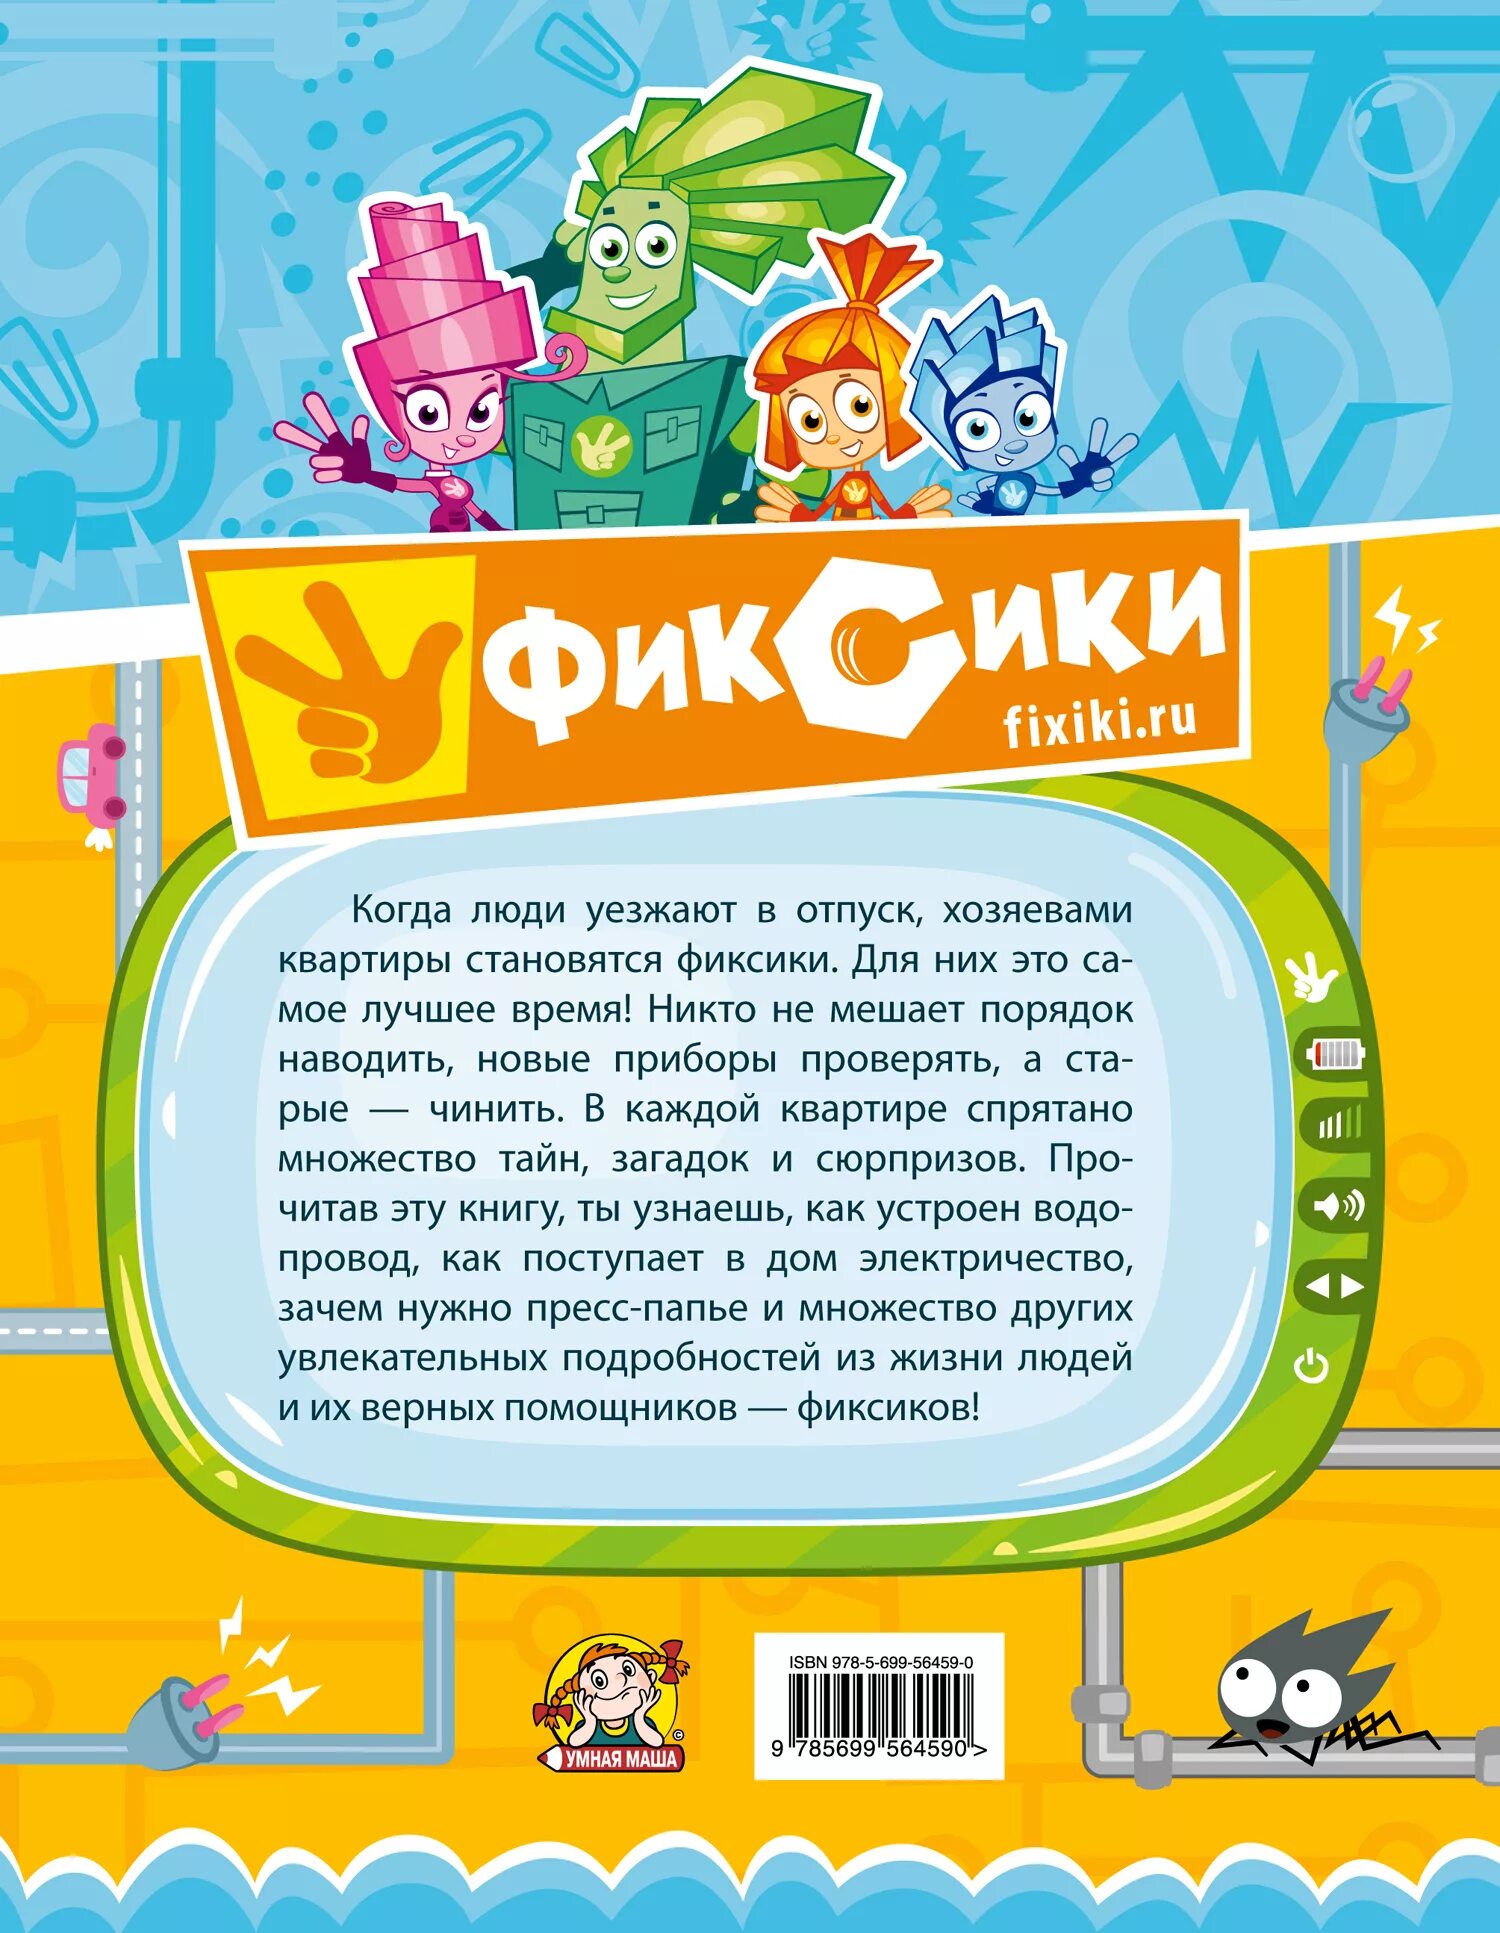 Фиксики. Описание Фиксиков. Письмо от Фиксиков для детей. С наклейками Фиксики.